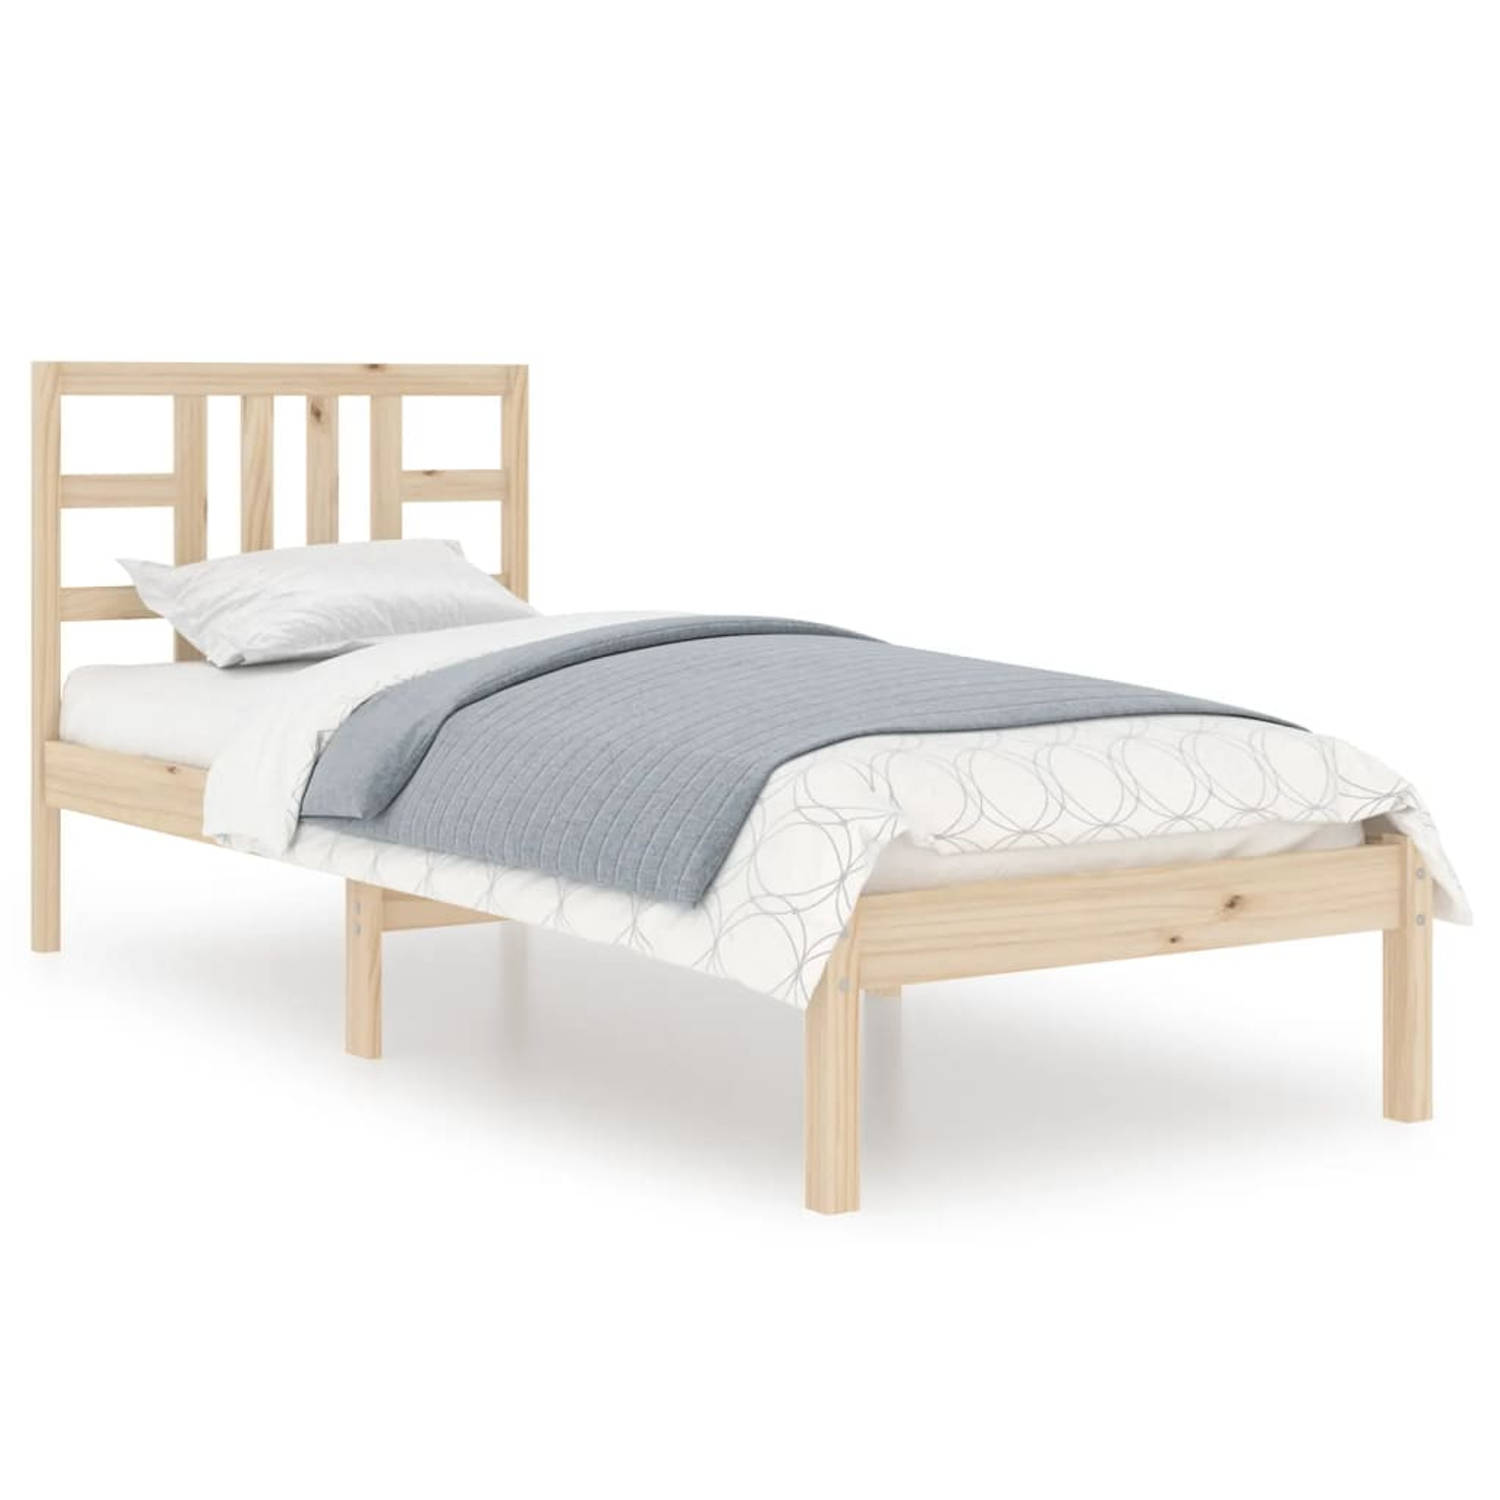 The Living Store Bedframe massief hout 90x200 cm - Bedframe - Bedframes - Eenpersoonsbed - Bed - Bedombouw - Ledikant - Houten Bedframe - Eenpersoonsbedden - Bedden - Bedombouwen -